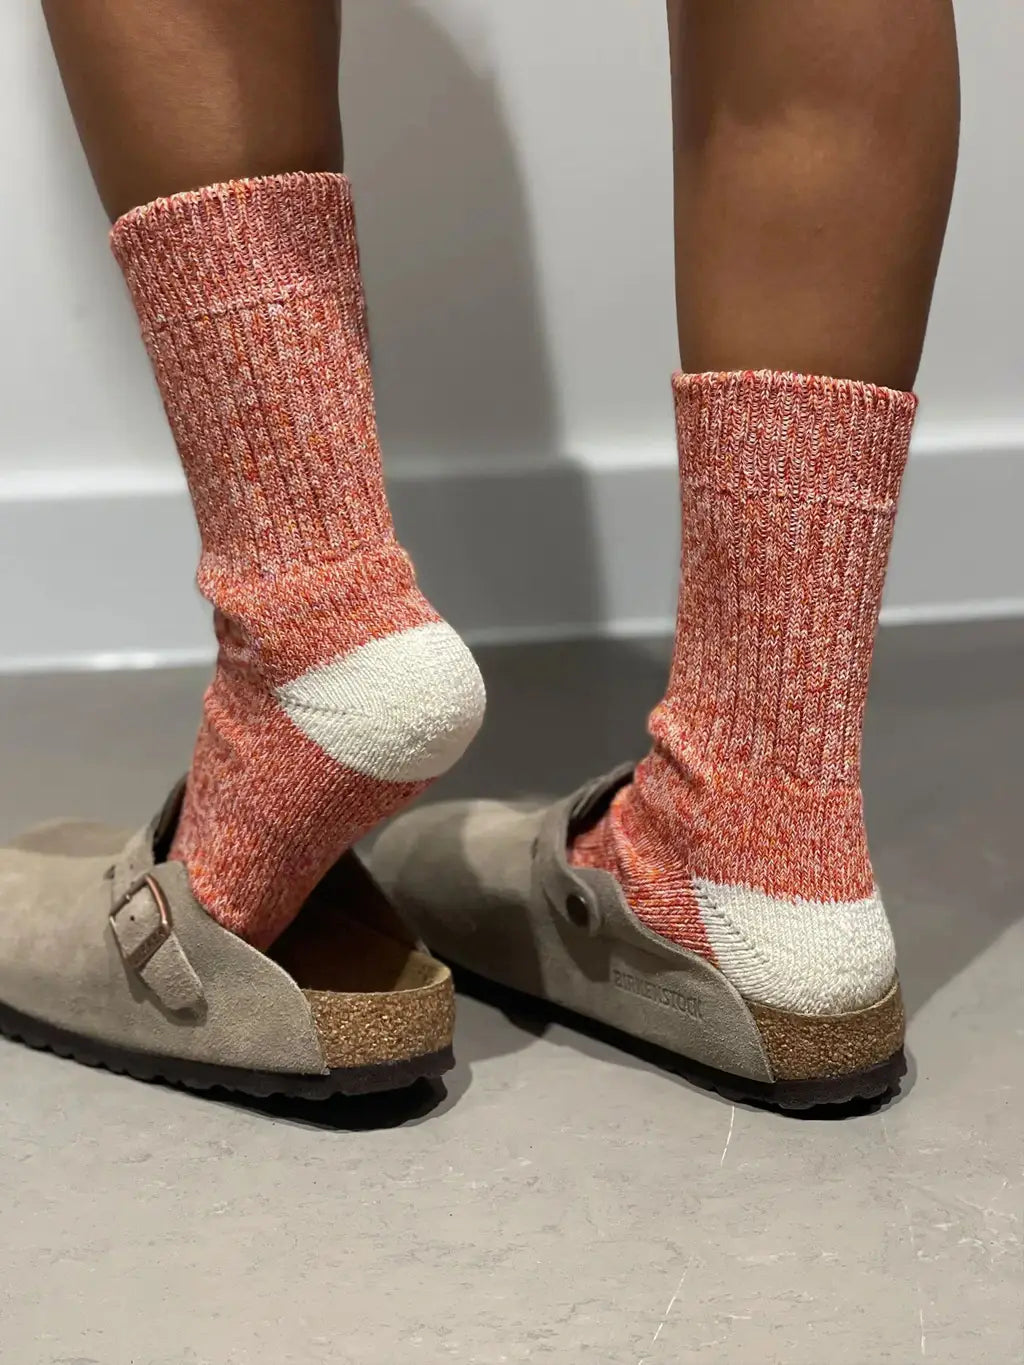 The JoJo | Women's Quarter Length Socks by Ivy Ellis Socks 